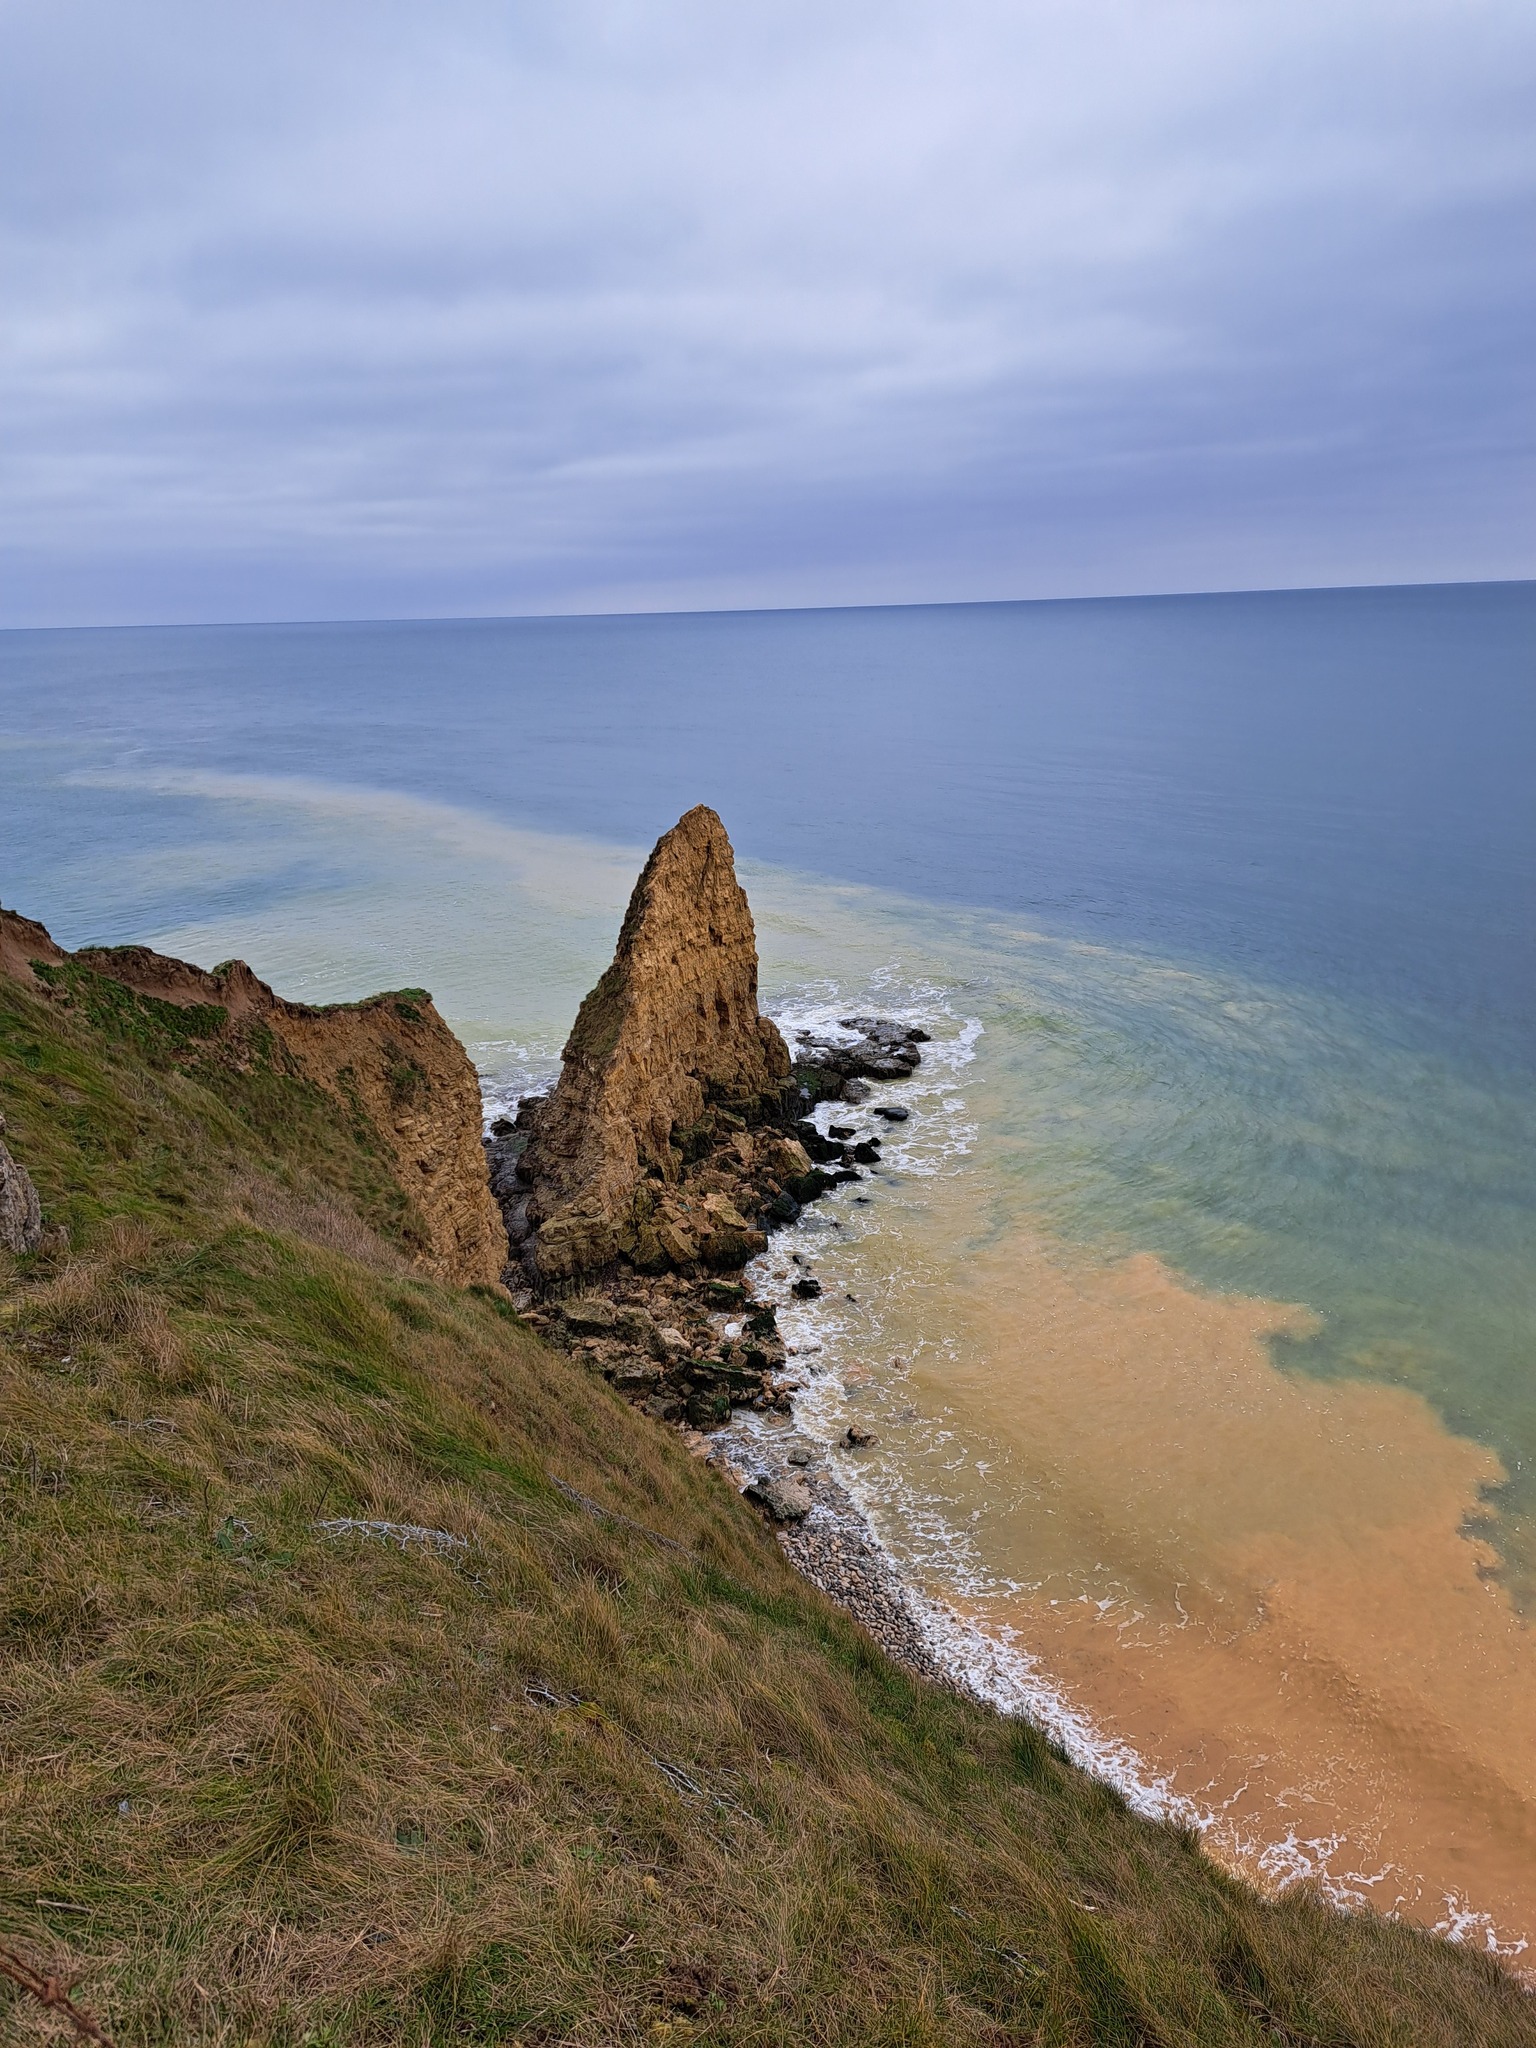 Pointe du Hoc: Collapsing cliffs